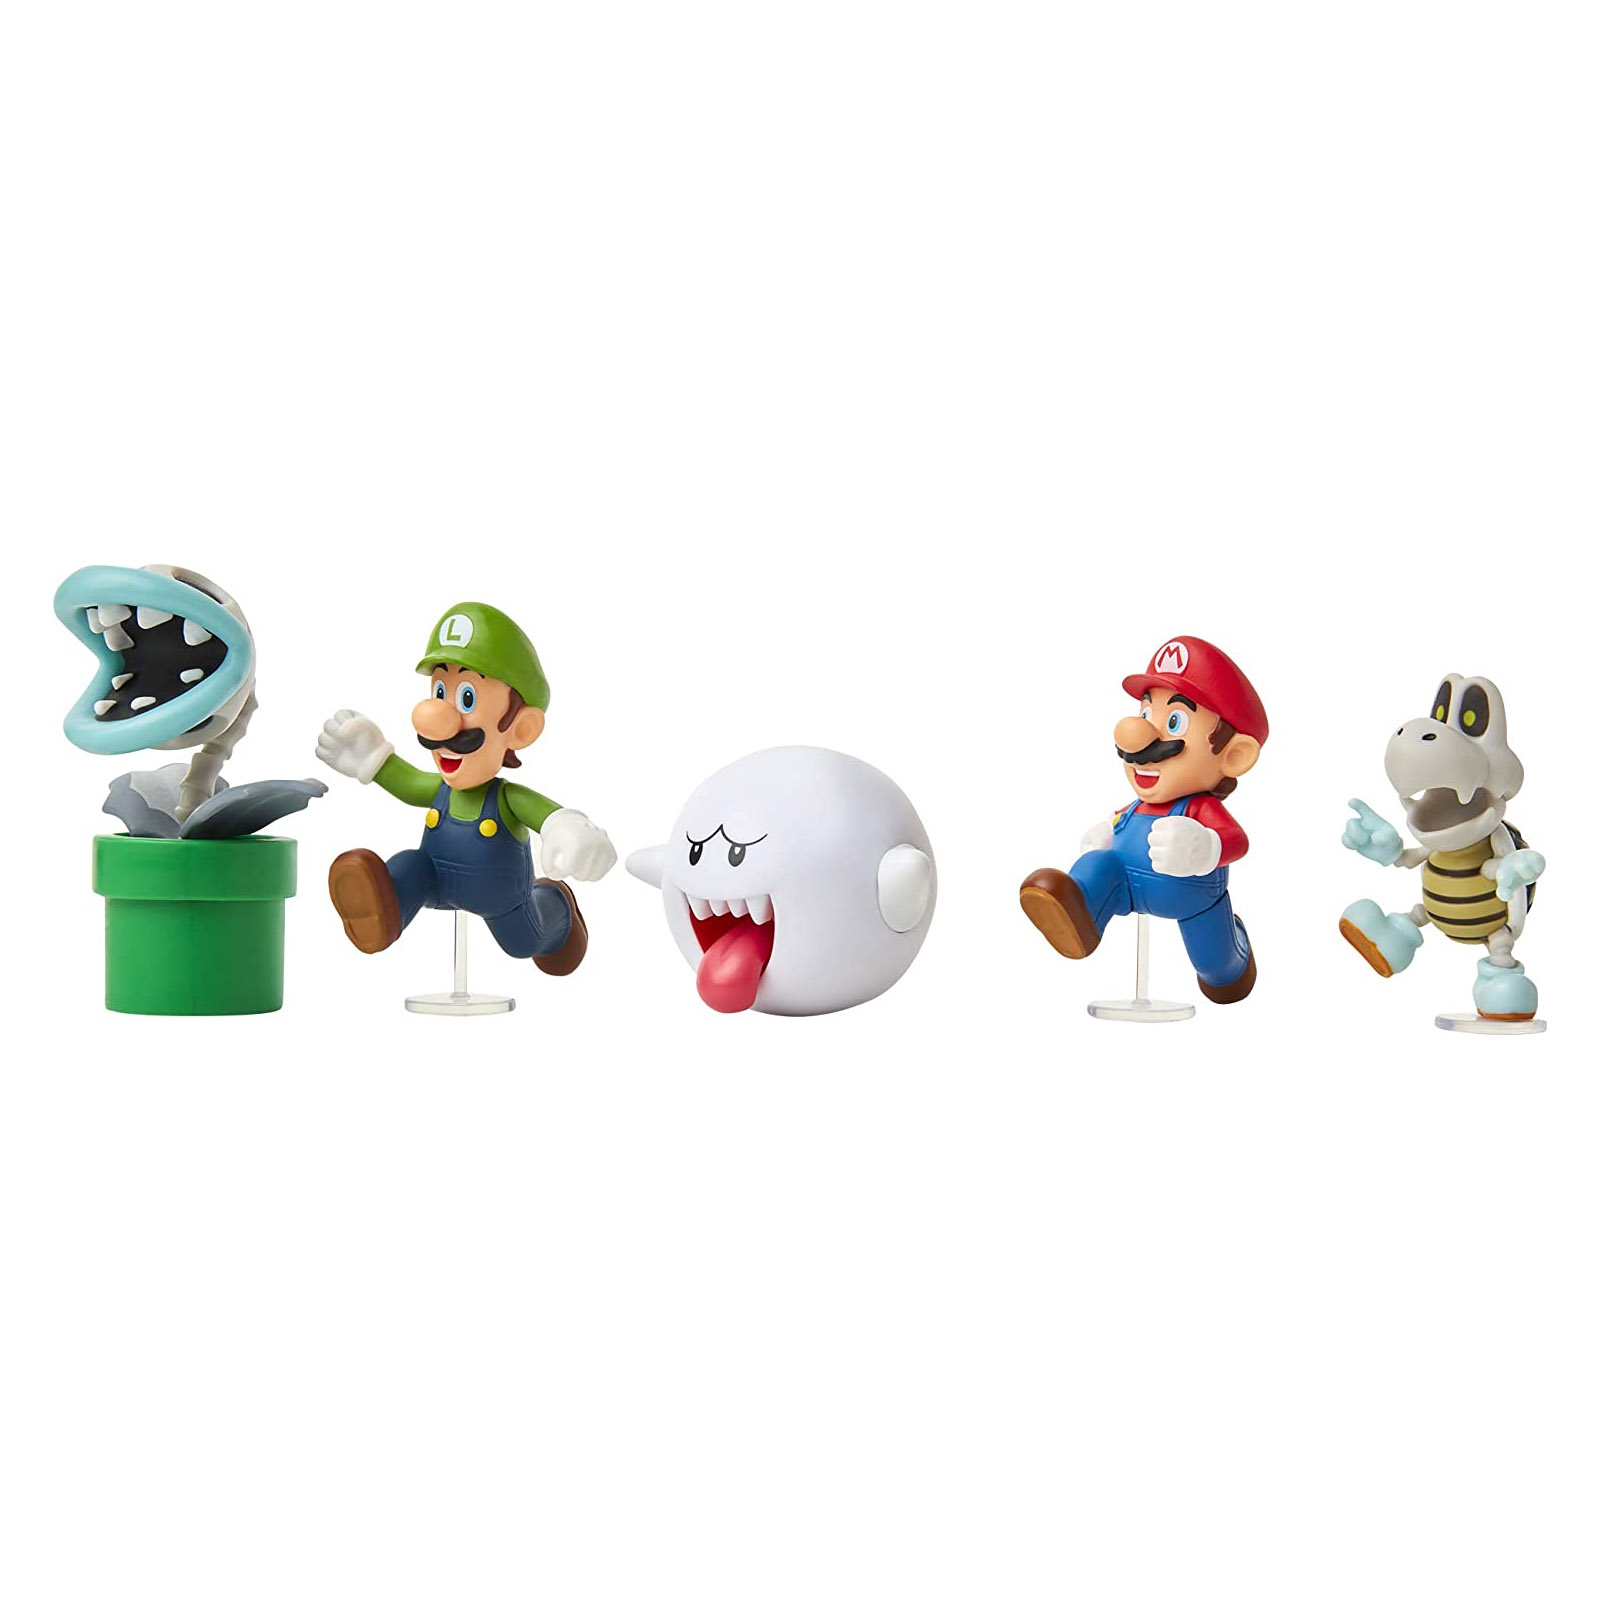 Super Mario: Boo! Confezione da 5 Minifigures 6 cm - Super Mario